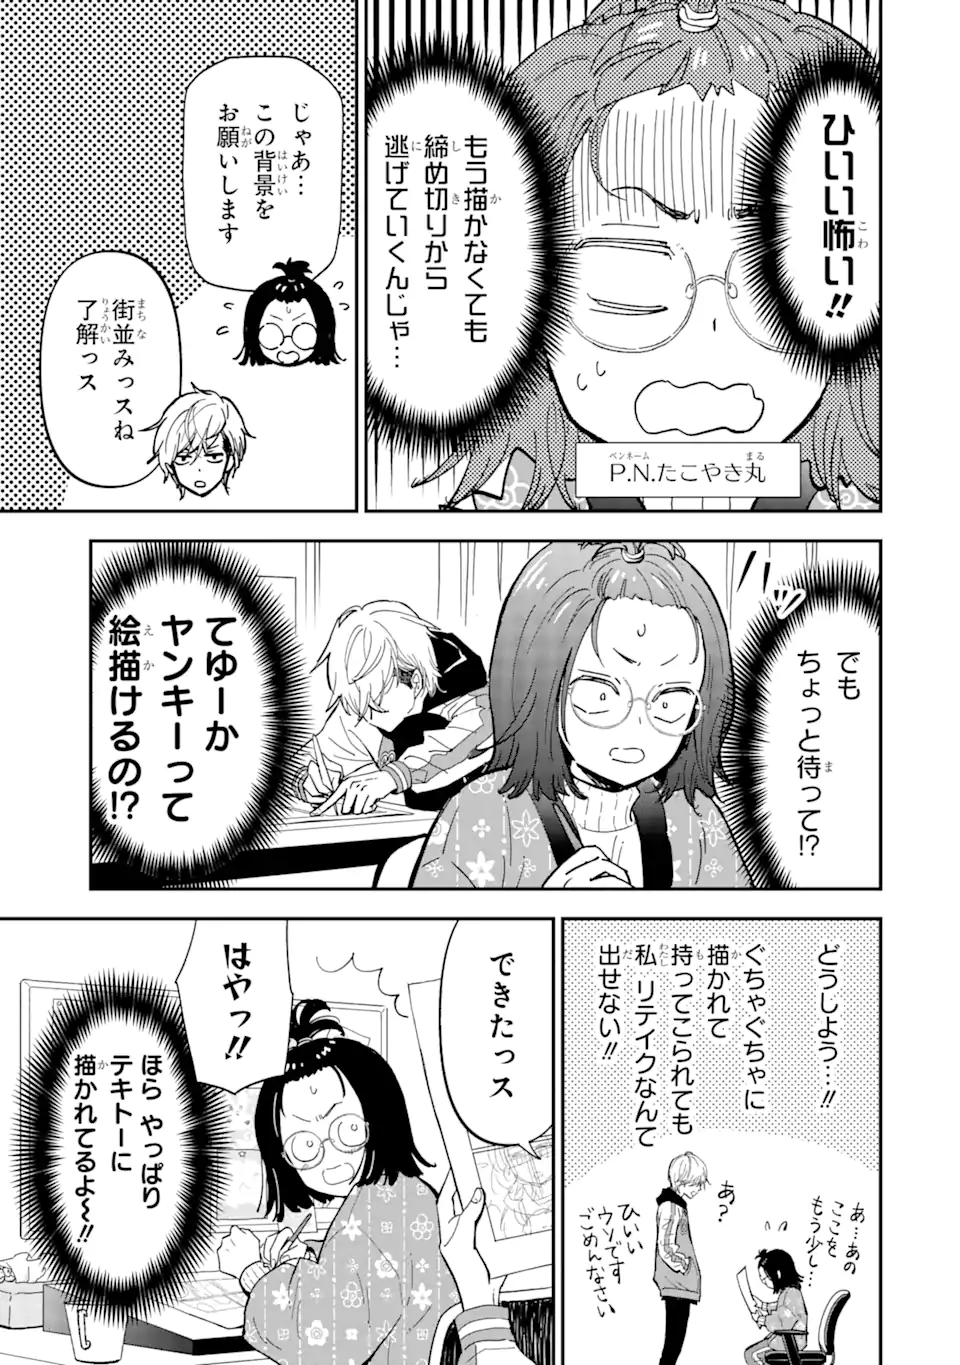 Yankee Assistant no Ashizawa-kun ni Koi wo shita - Chapter 1.1 - Page 5